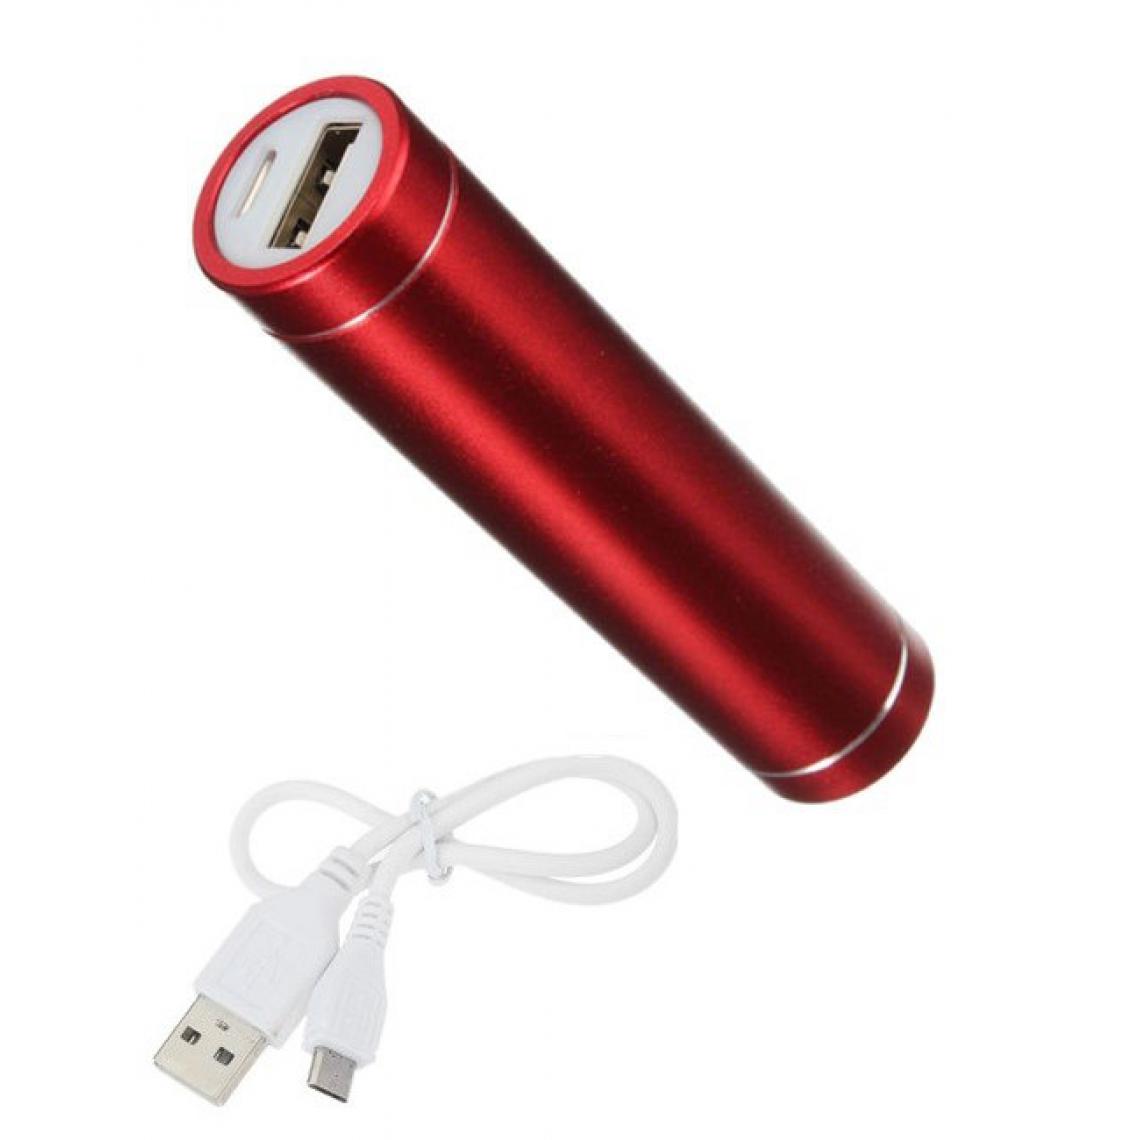 Shot - Batterie Chargeur Externe pour SAMSUNG Galaxy Note 10 Lite Power Bank 2600mAh avec Cable USB/Mirco USB Secours Telepho (ROUGE) - Chargeur secteur téléphone